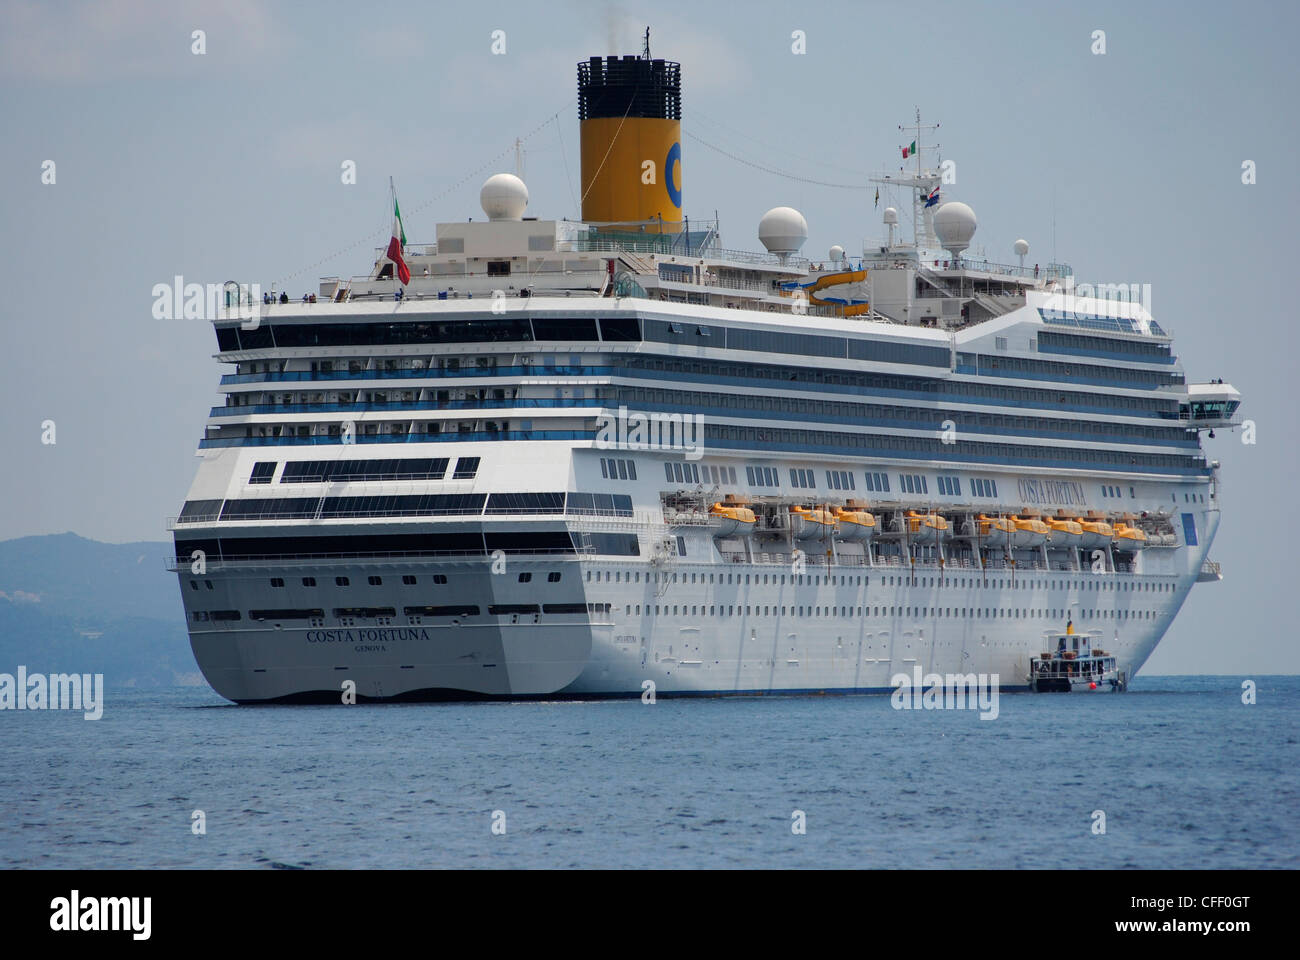 Cruise ship in Croatia Stock Photo